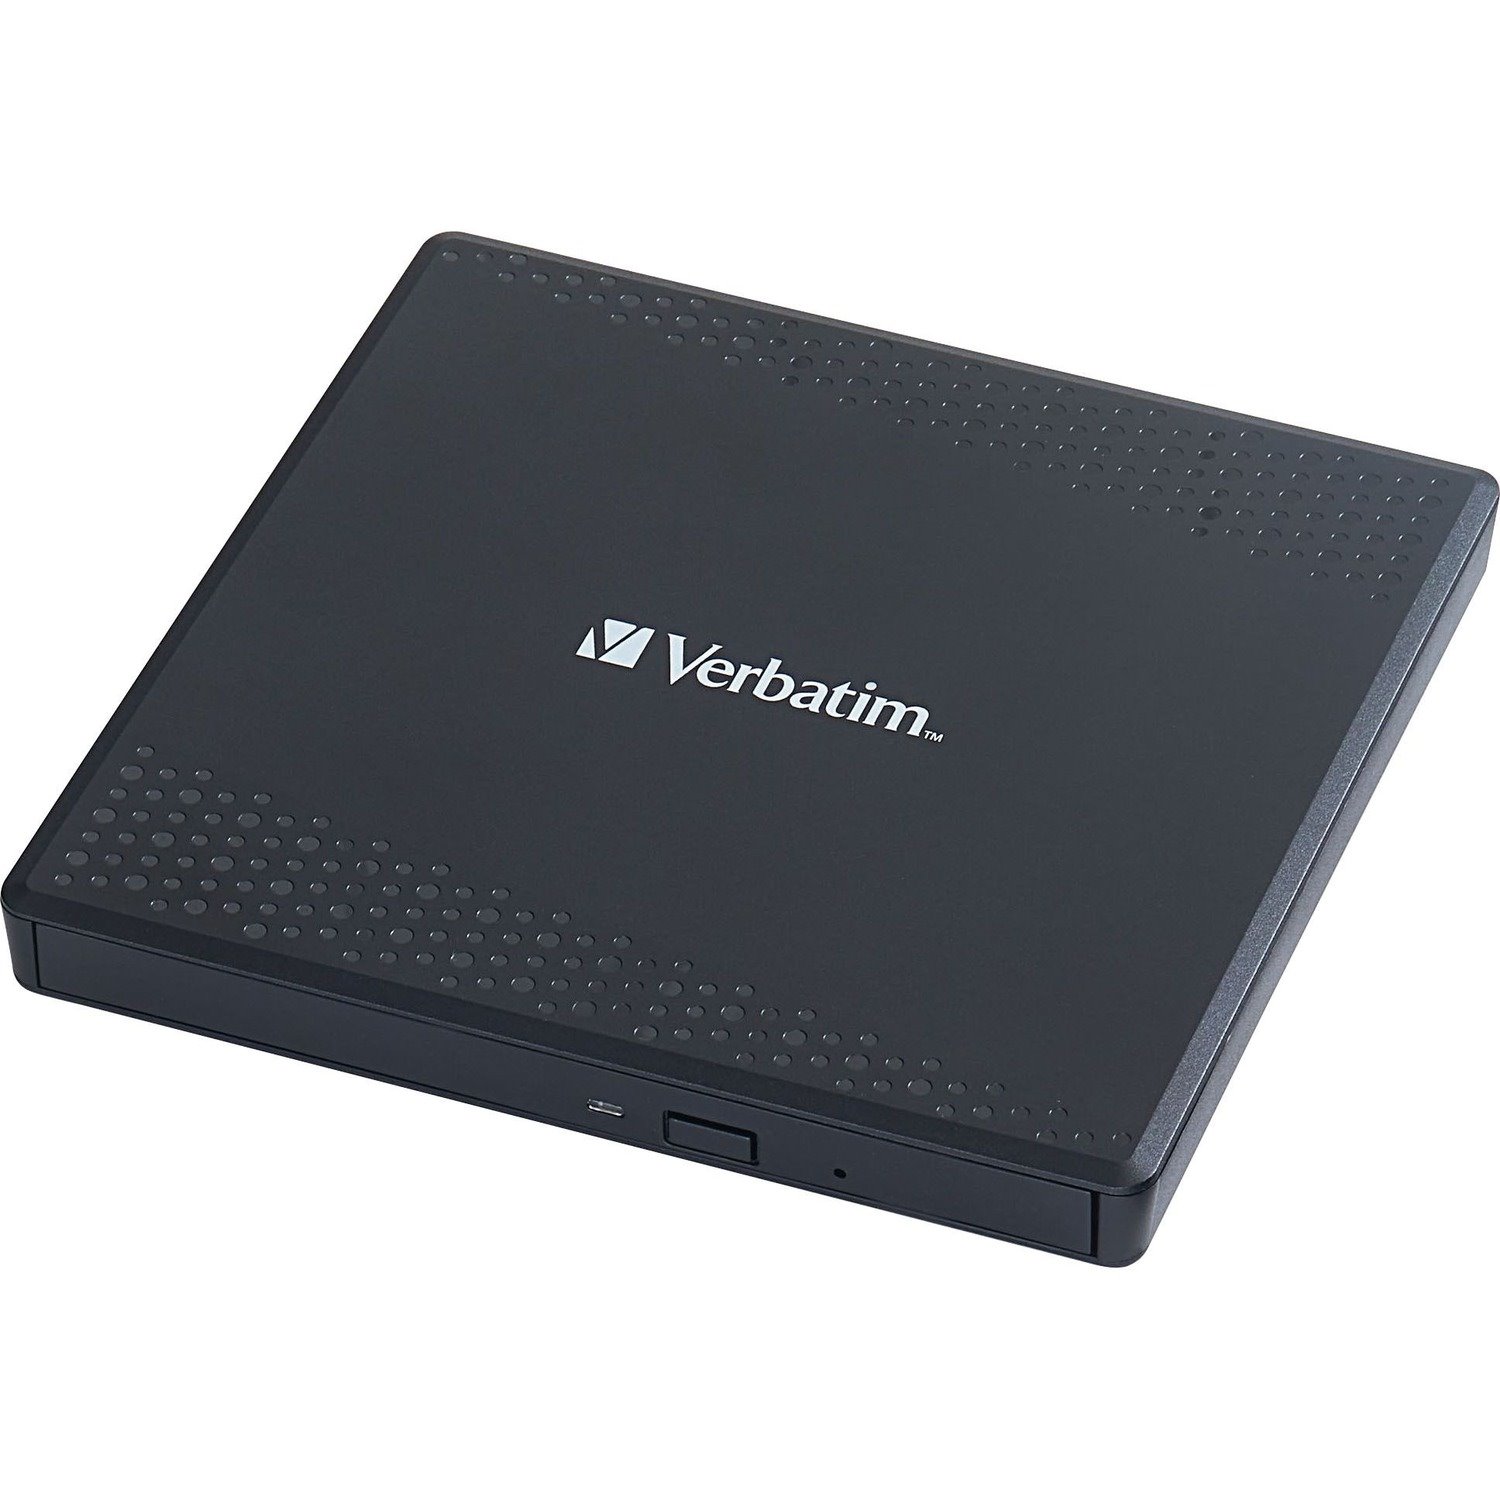 Verbatim DVD-Writer - External